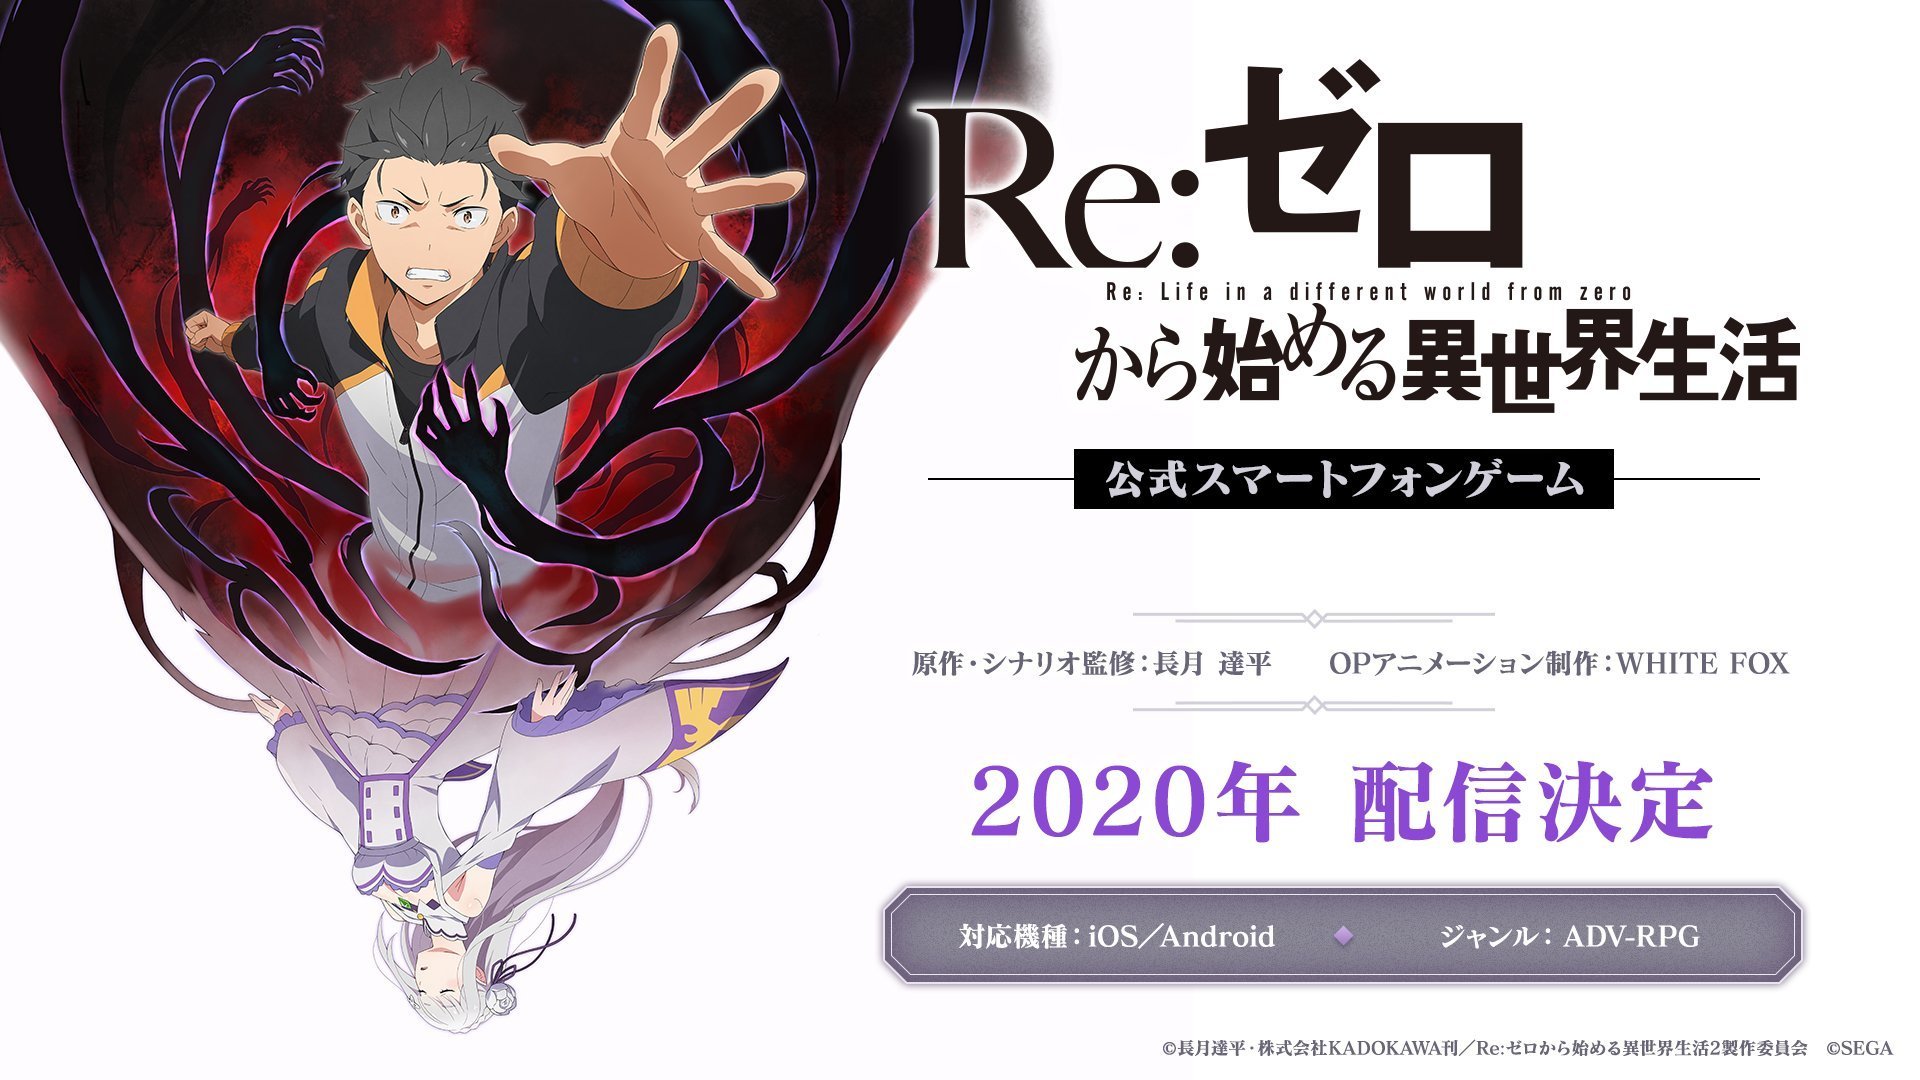 O site oficial de Re: Zero Kara Hajimeru Isekai Seikatsu – Lost in Memories, o jogo mobile da franquia Re:Zero, começou a exibir um teaser trailer.